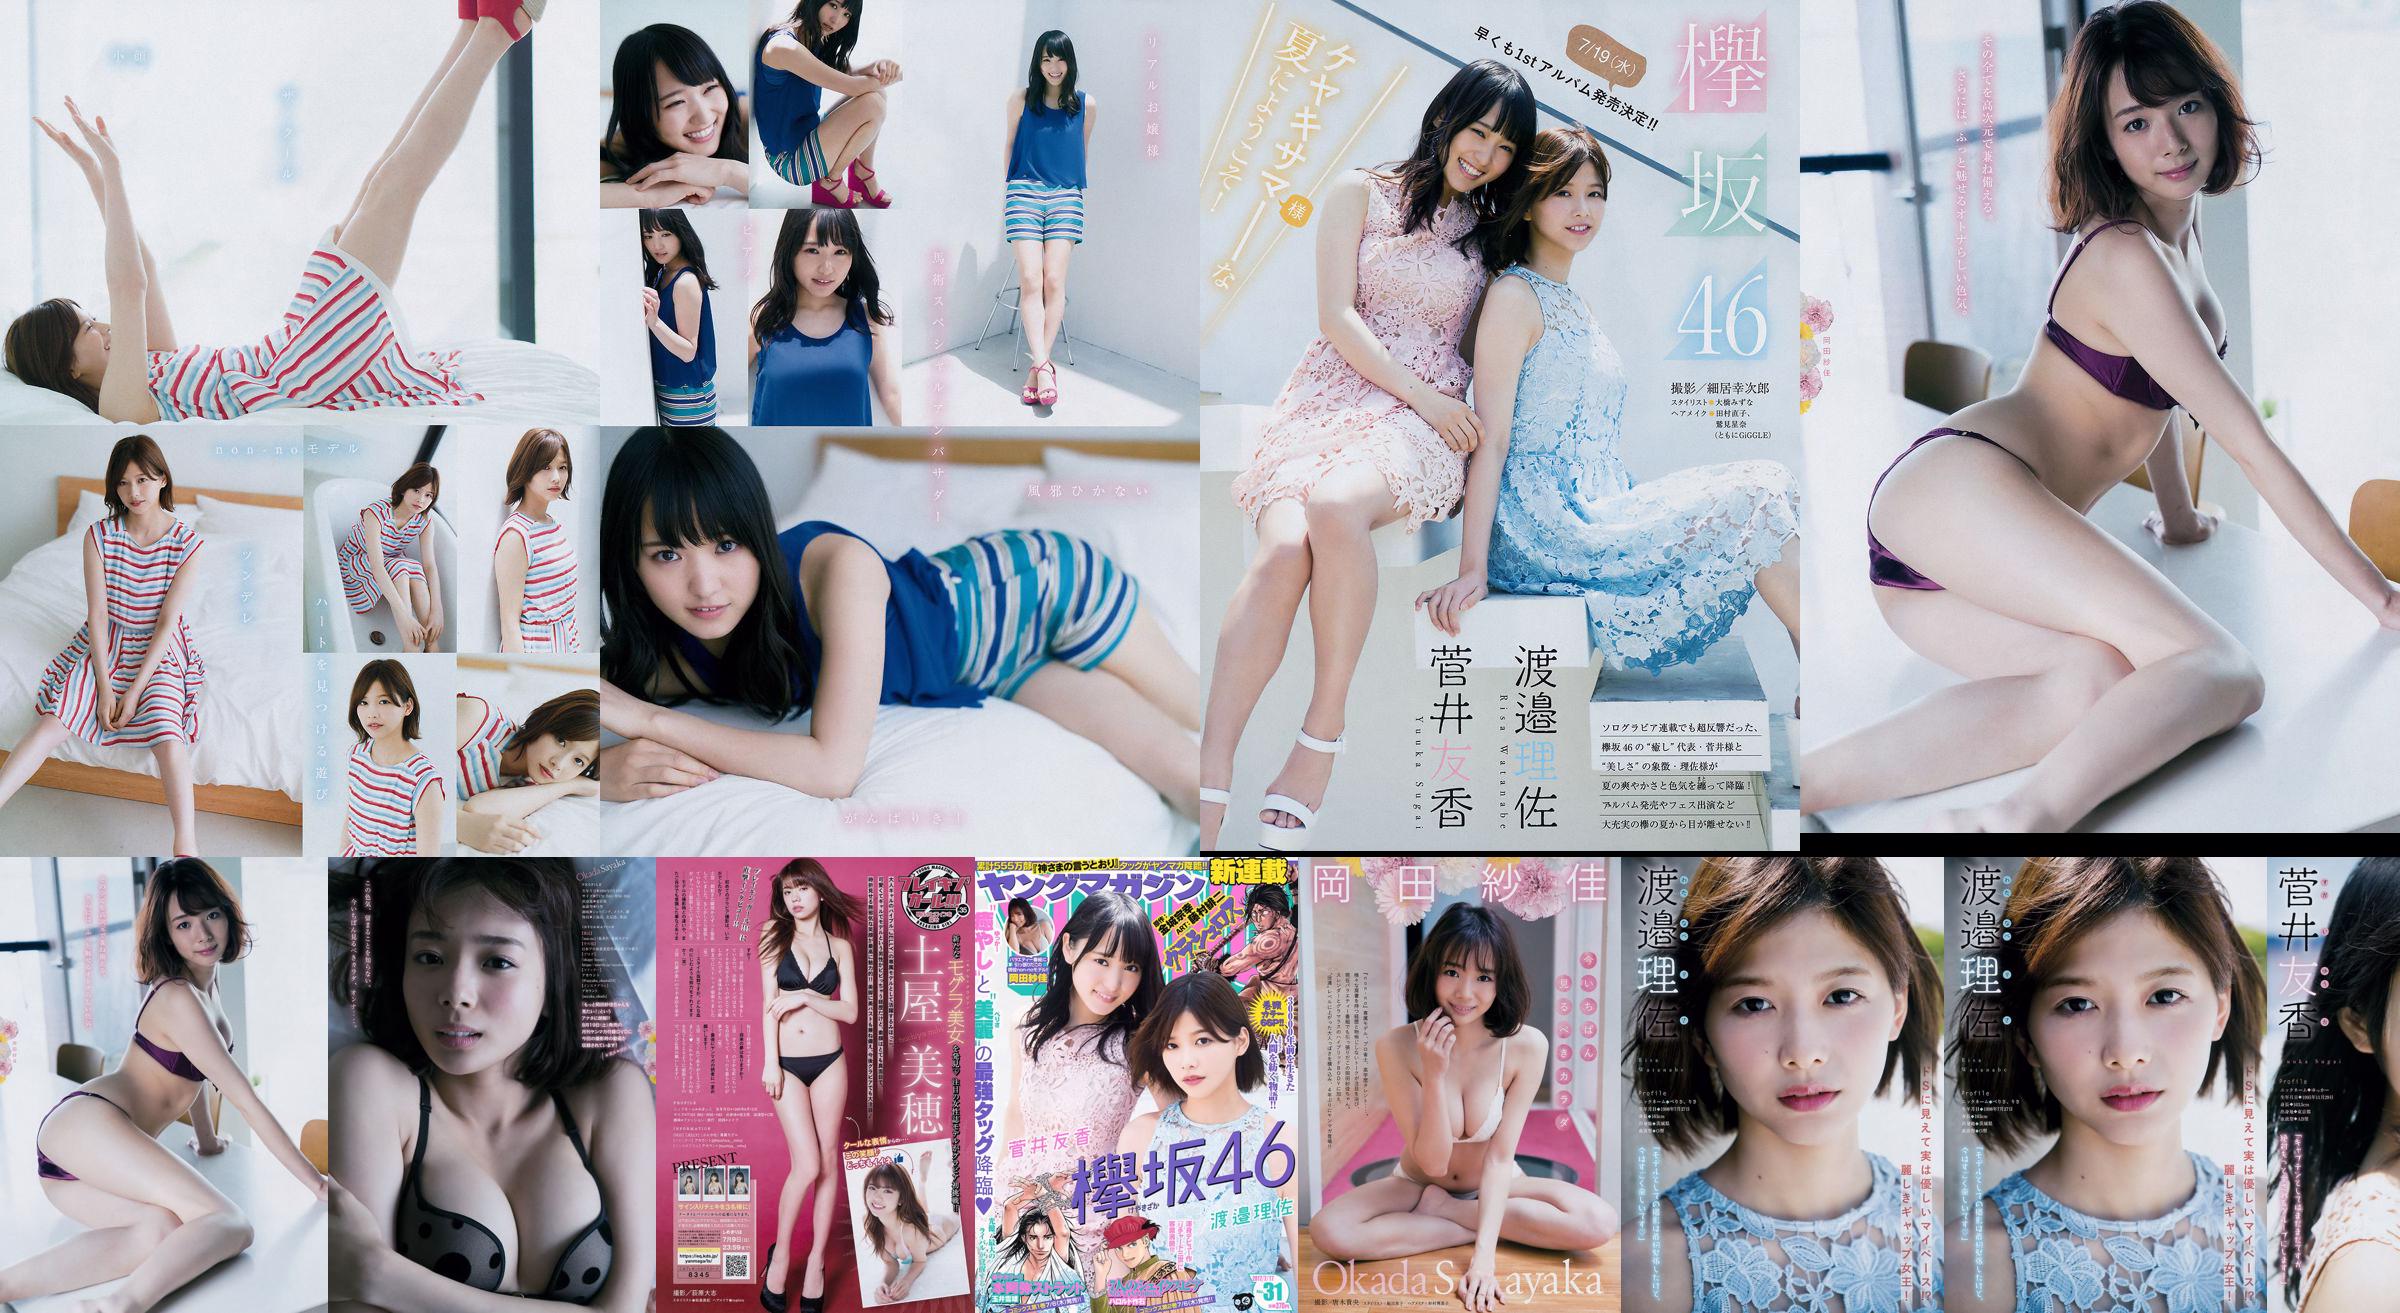 [Majalah Muda] Watanabe Risa, Sugai Yuka, Majalah Foto No.31 Okada Saika 2017 No.1e2f09 Halaman 1